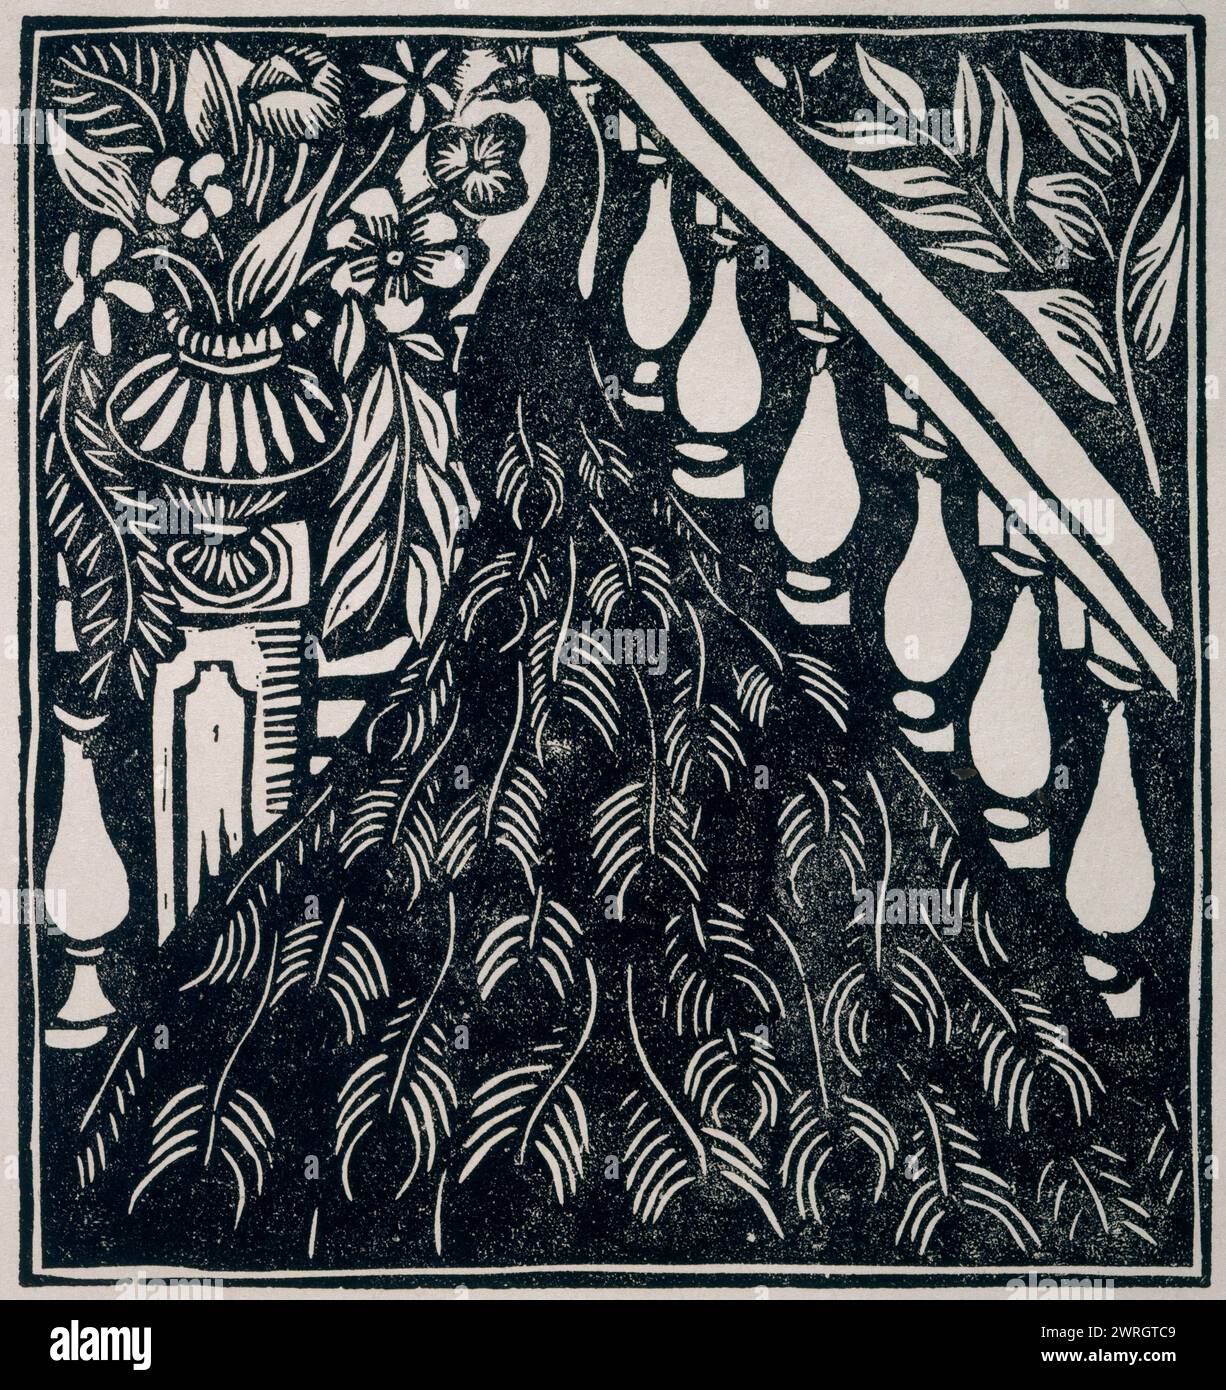 Pfau. Illustration zu Le Bestiaire von G. Apollinaire, 1910-1911. Gefunden in der Sammlung von Mus&#xe9;e National d'Art moderne, Centre Georges Pompidou, Paris. Stockfoto